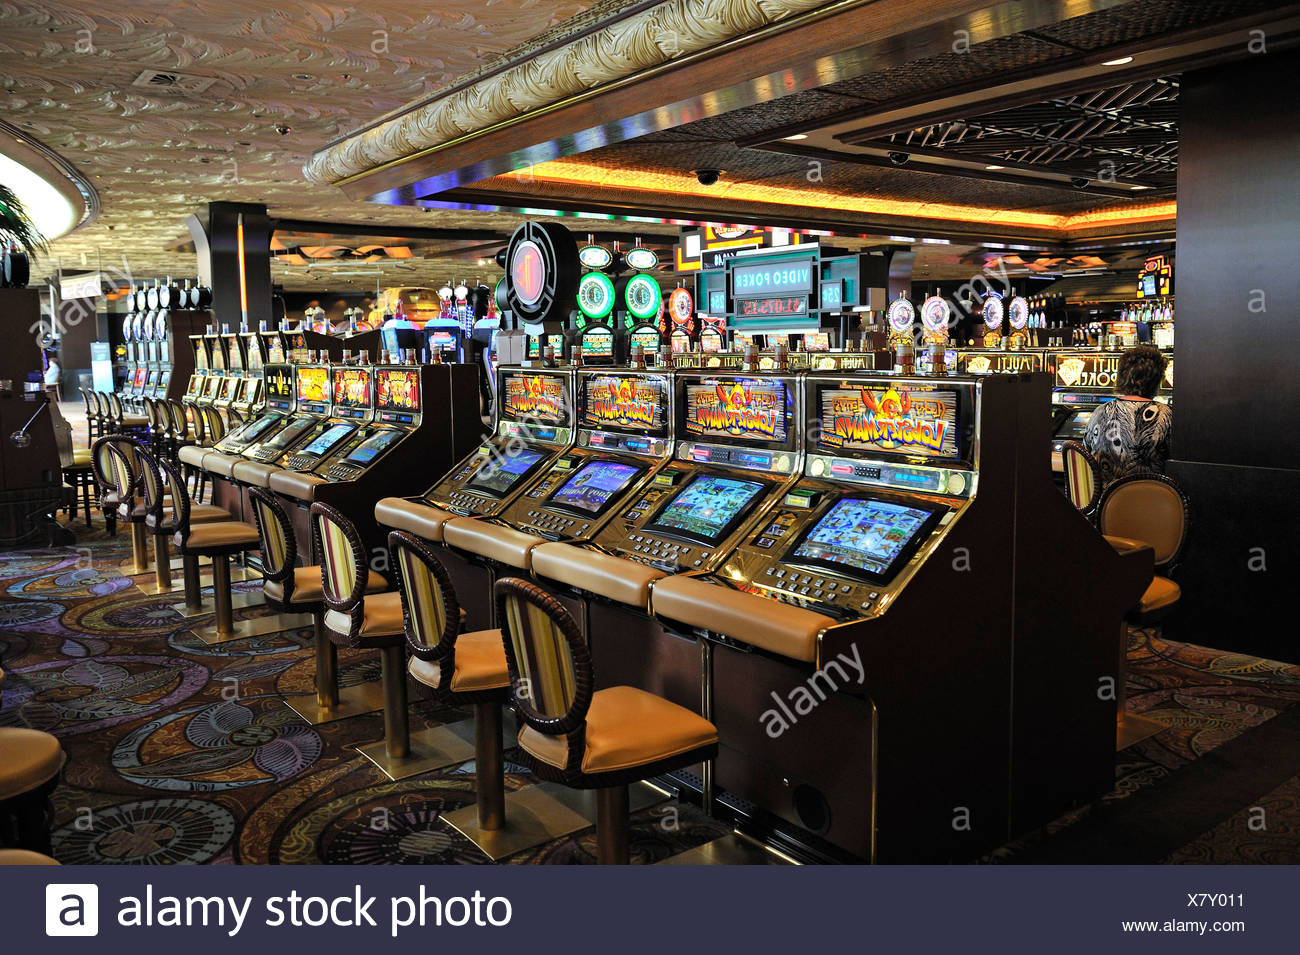 промокоды Mirage Slot Casino